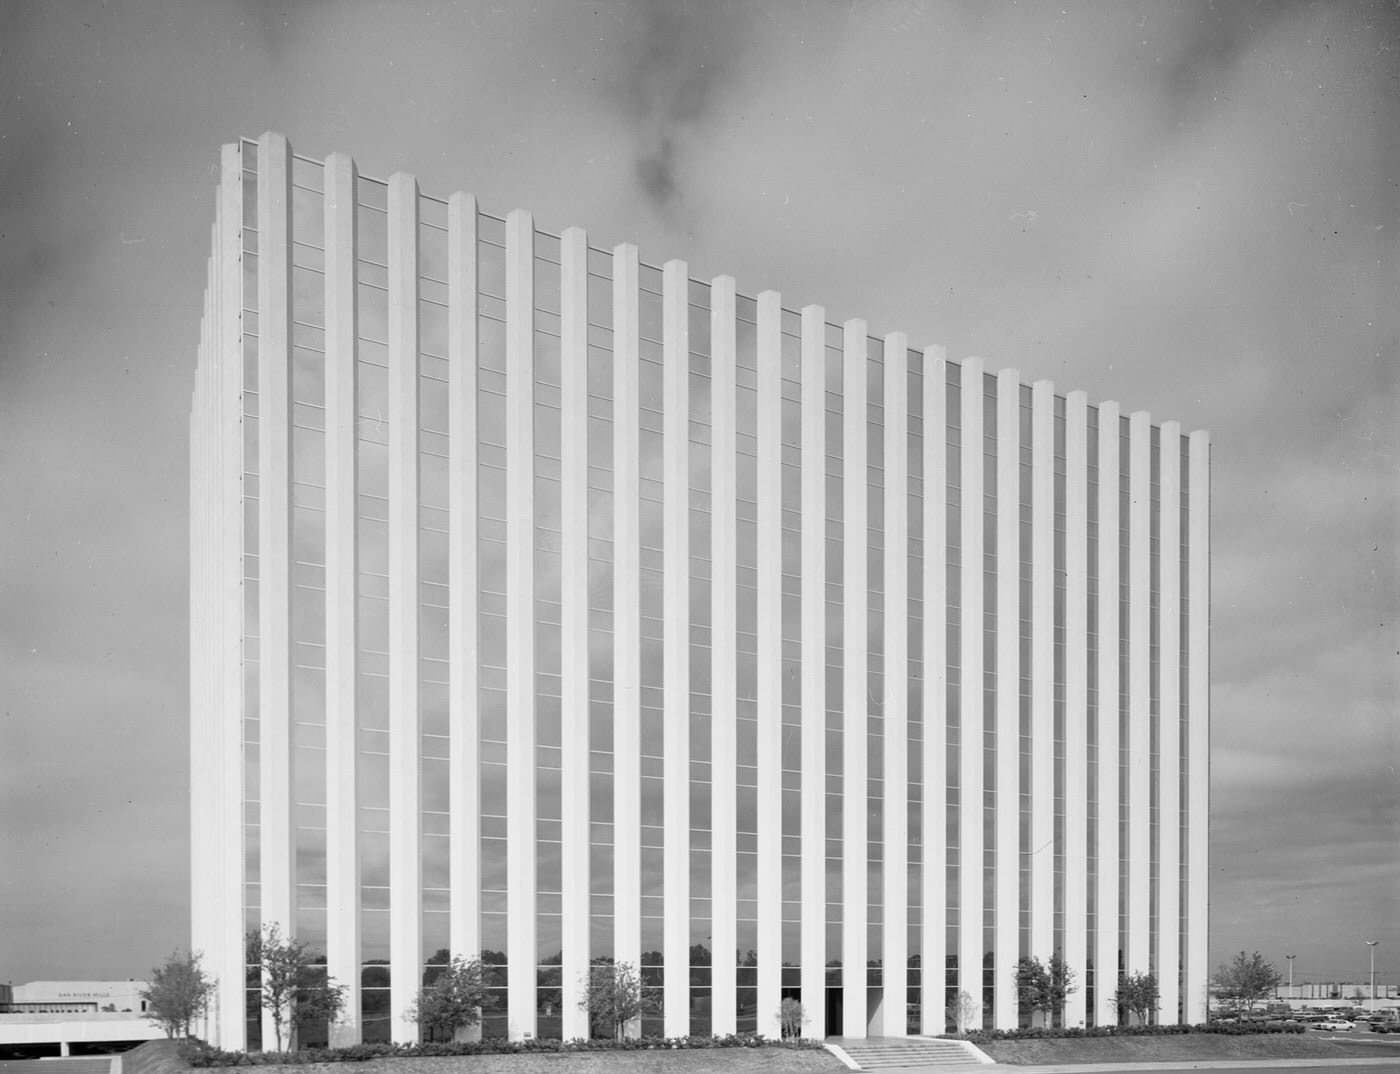 Office building on I-35 E, Dallas, Texas, 1963